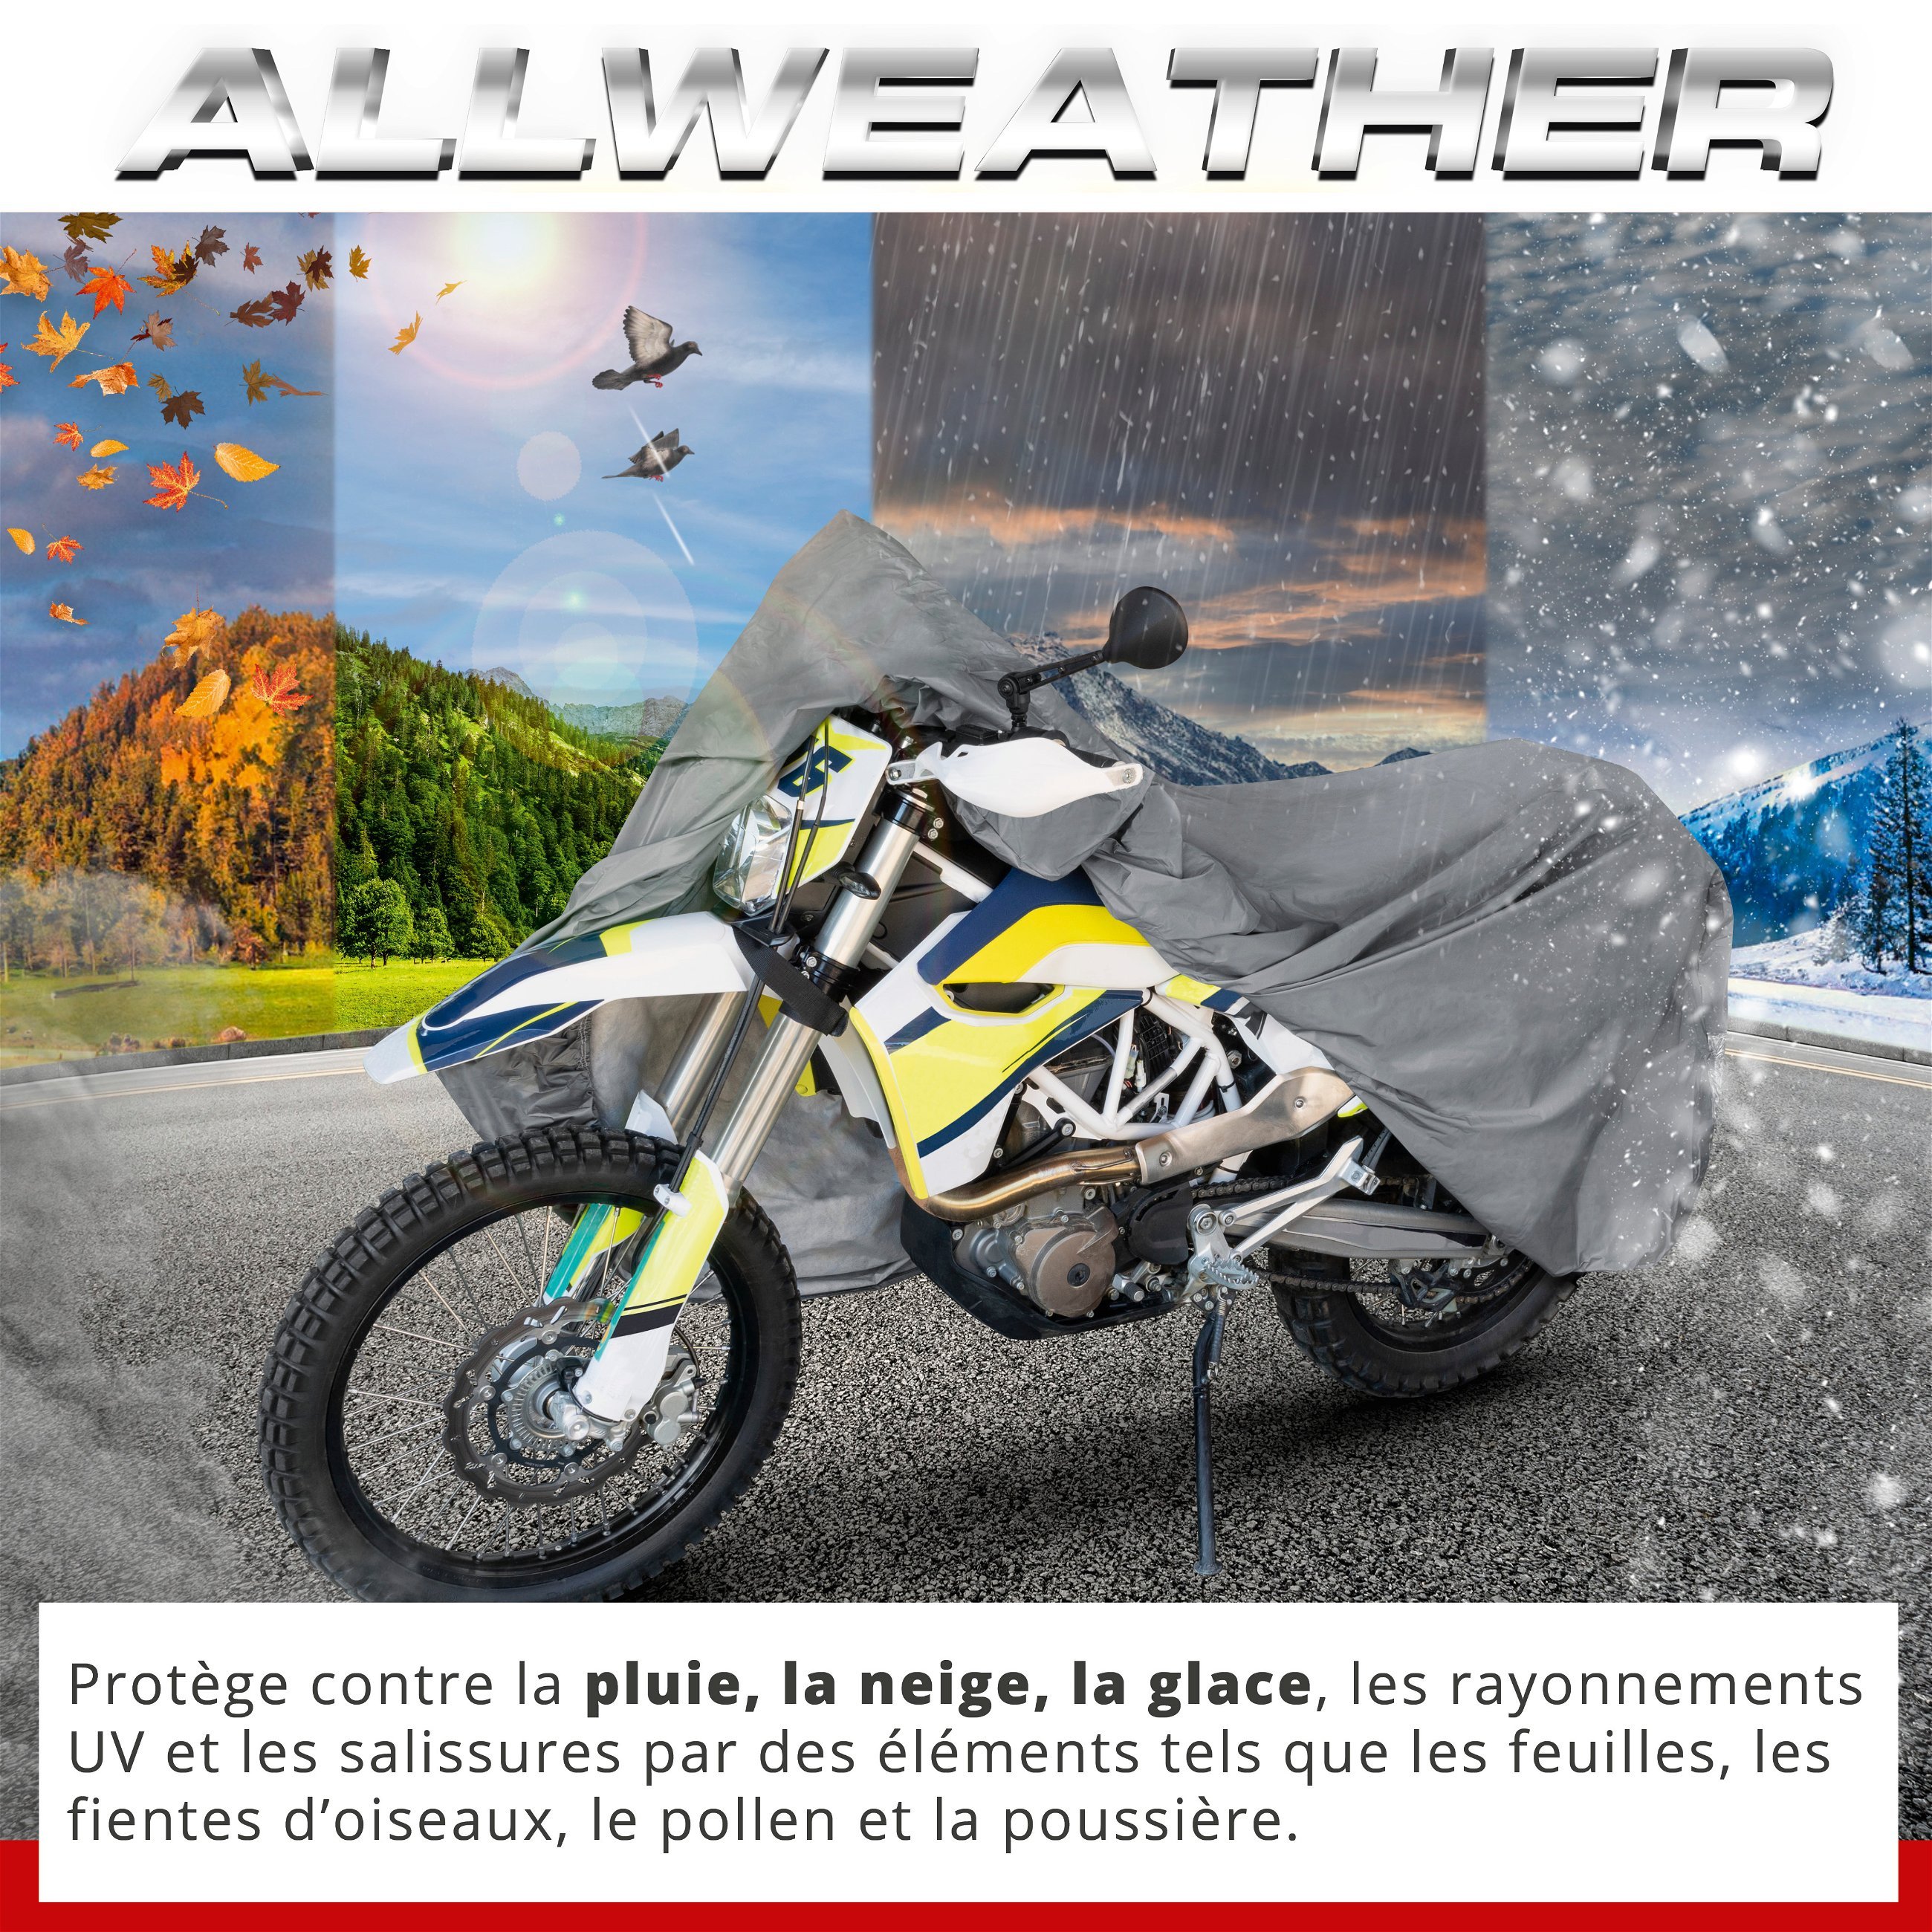 Garage à motos Enduro taille XL PVC - 255 x 110 x 135 cm gris